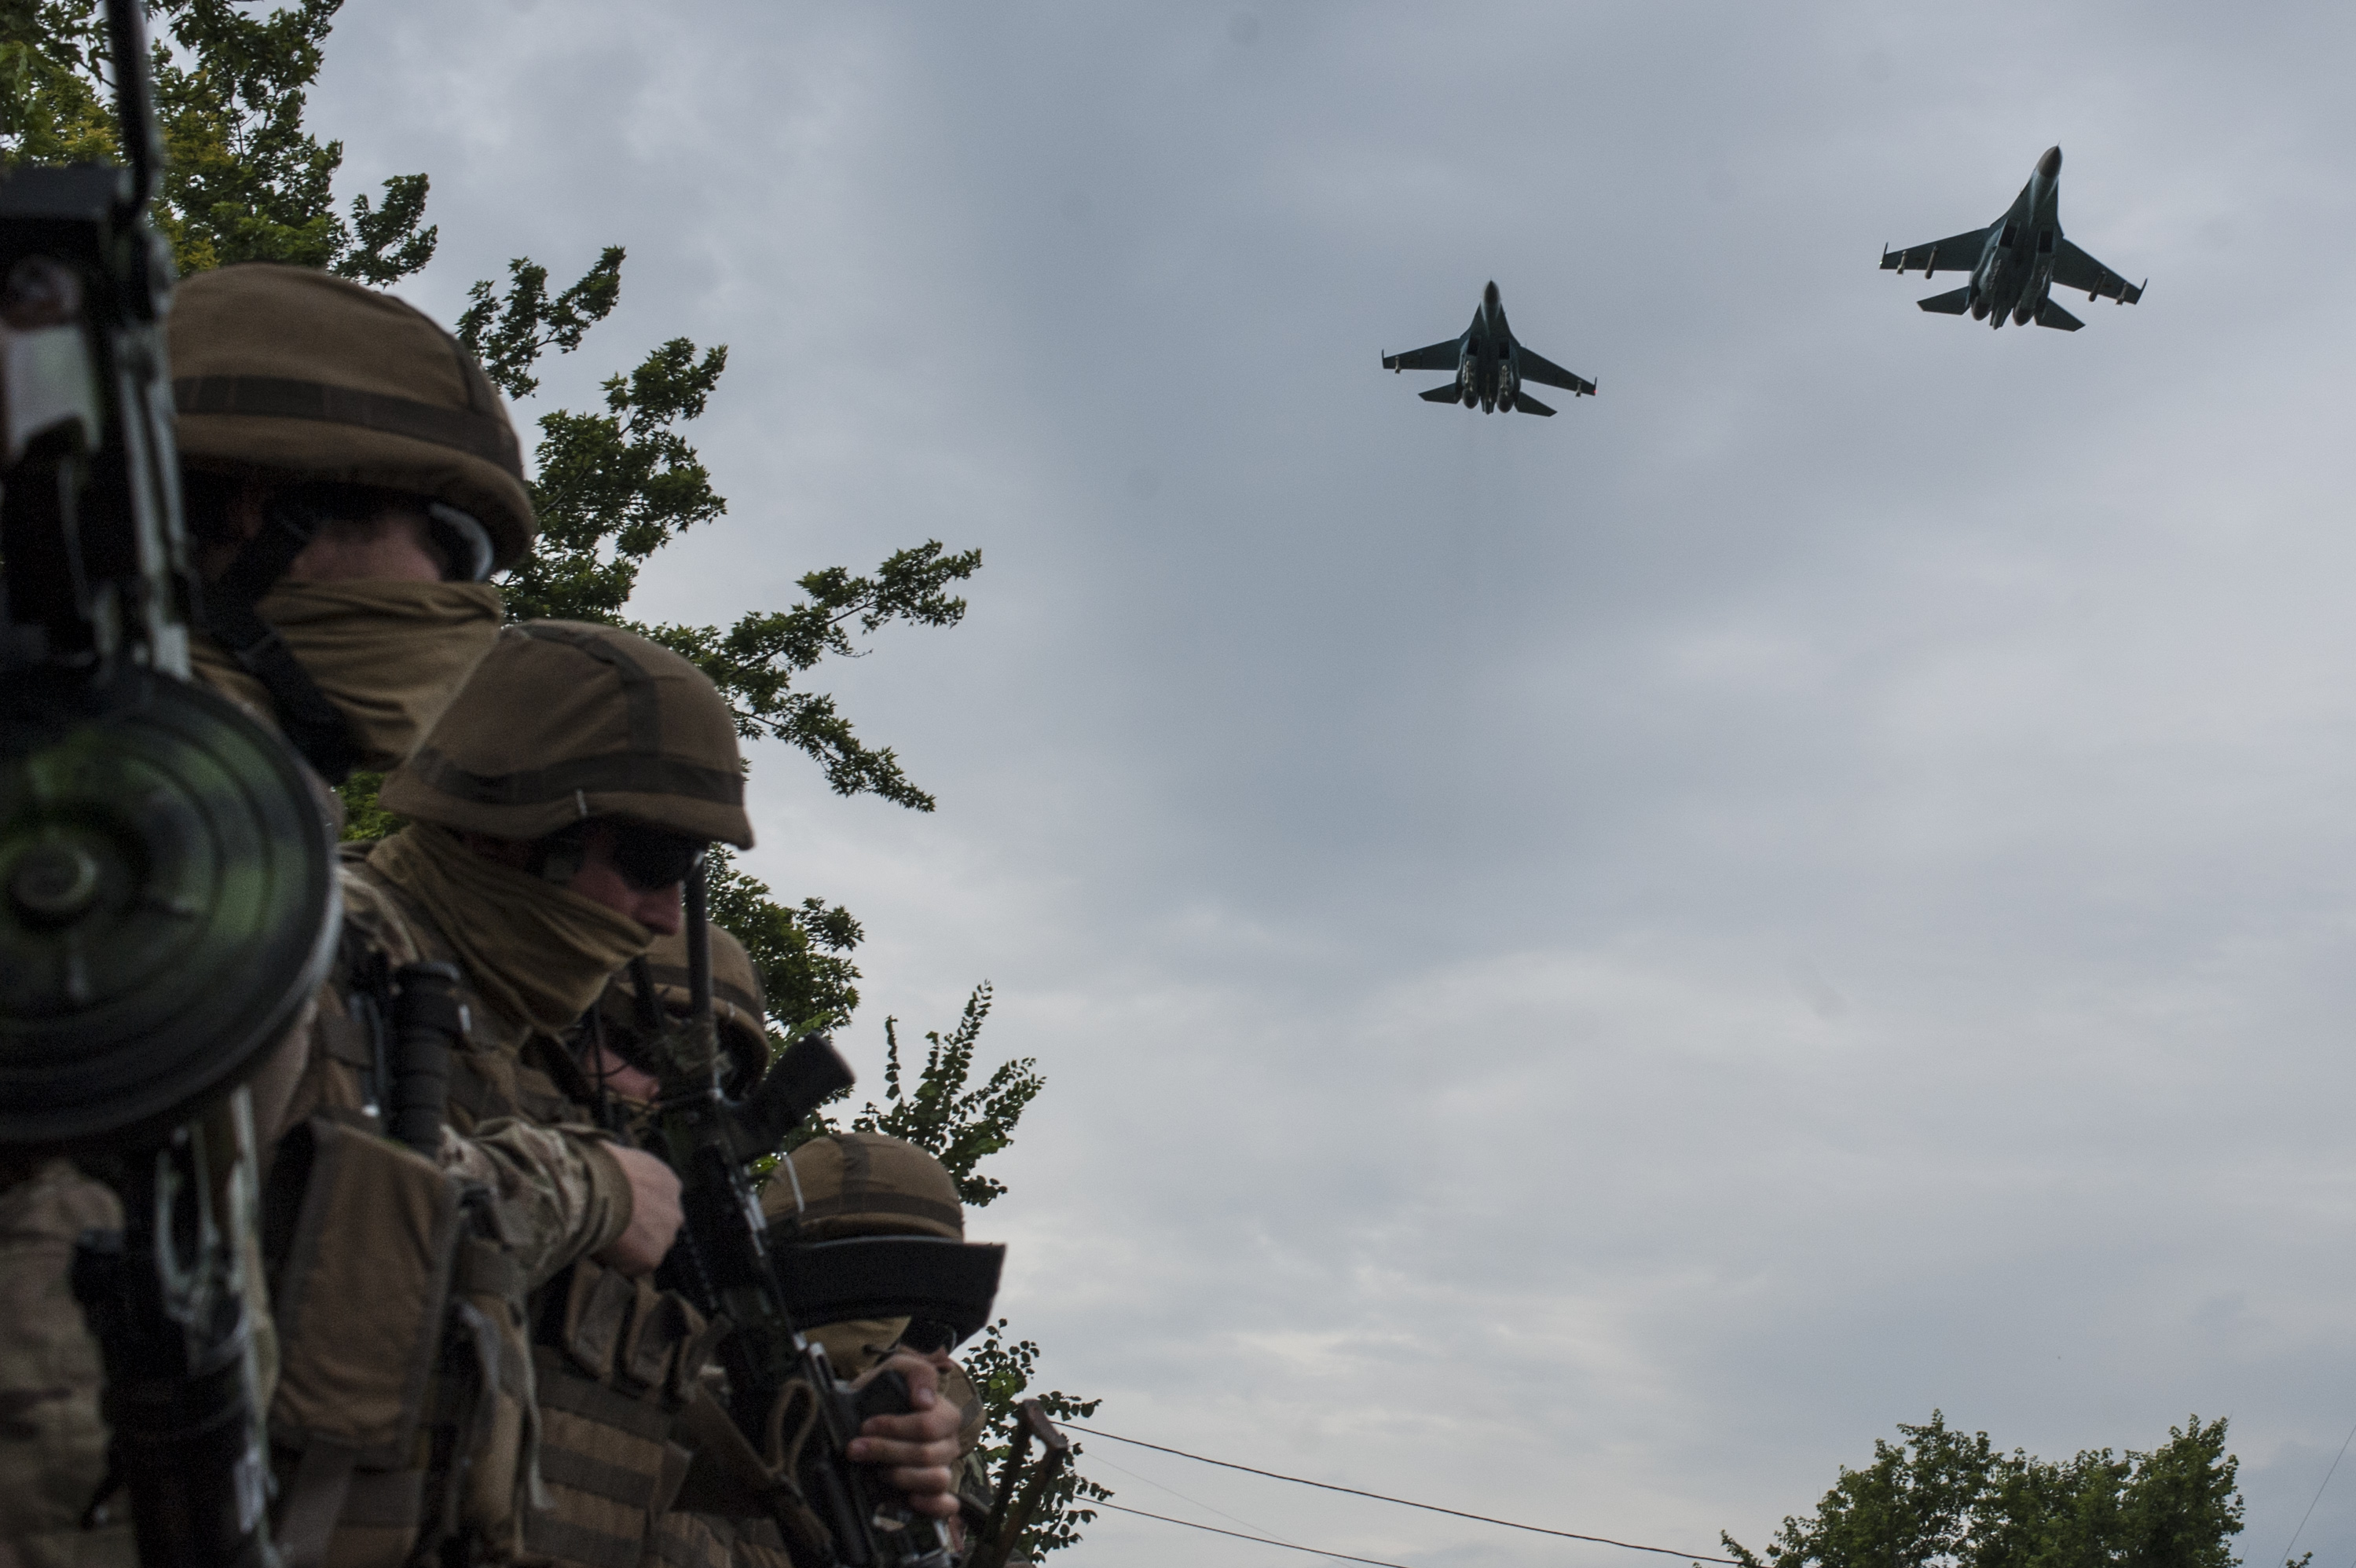 Ukrainian Army jets fly over the Ukrainian government military base while troops wait for Ukrainian President Petro Poroshenko's visit in Devhenke village, Kharkiv region, eastern Ukraine on July 8, 2014. (Evgeniy Maloletka—AP)